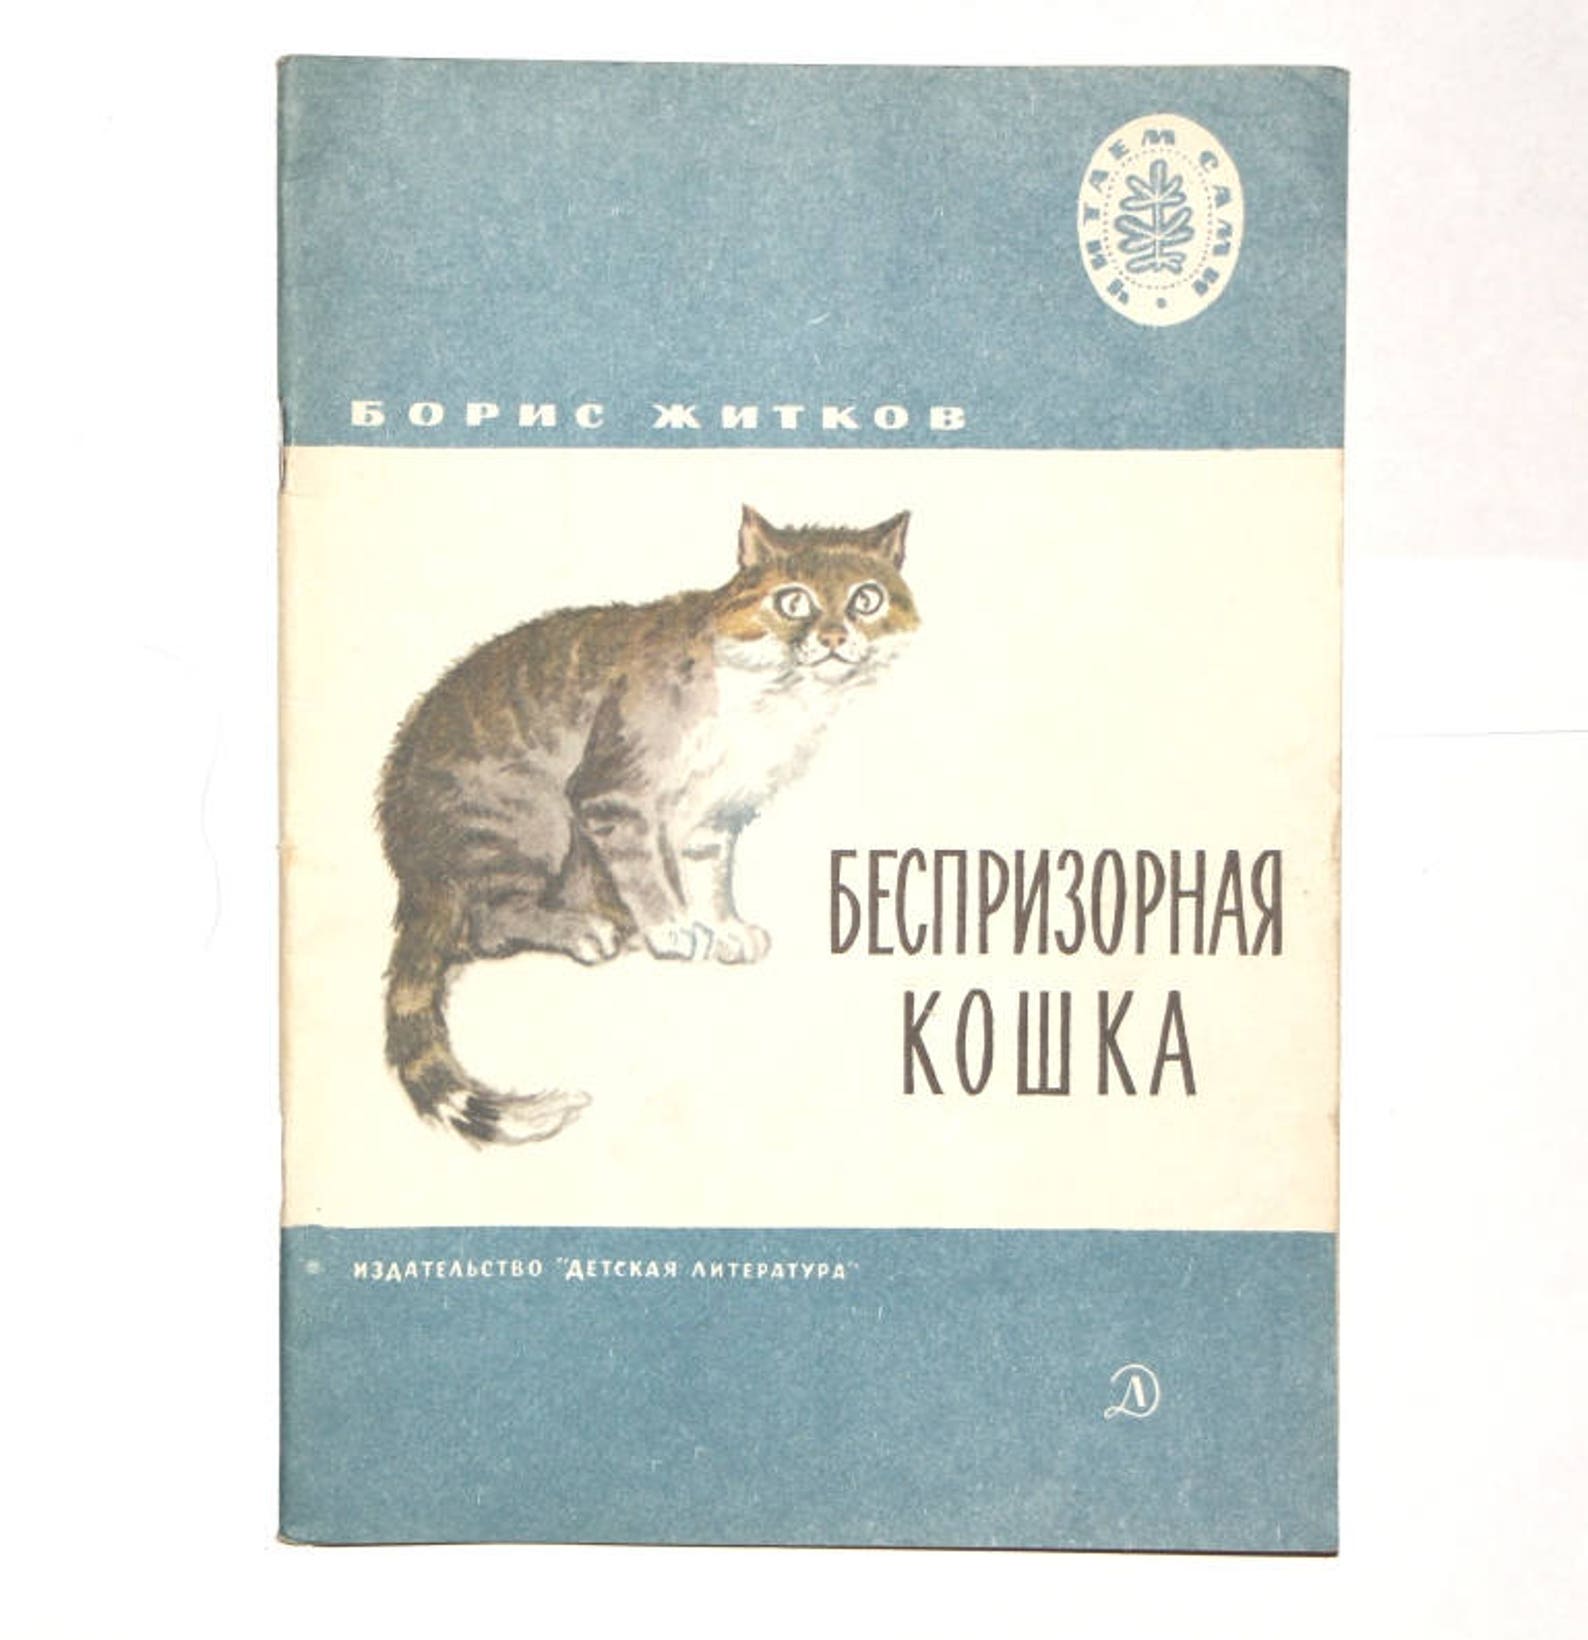 Беспризорная кошка читательский дневник